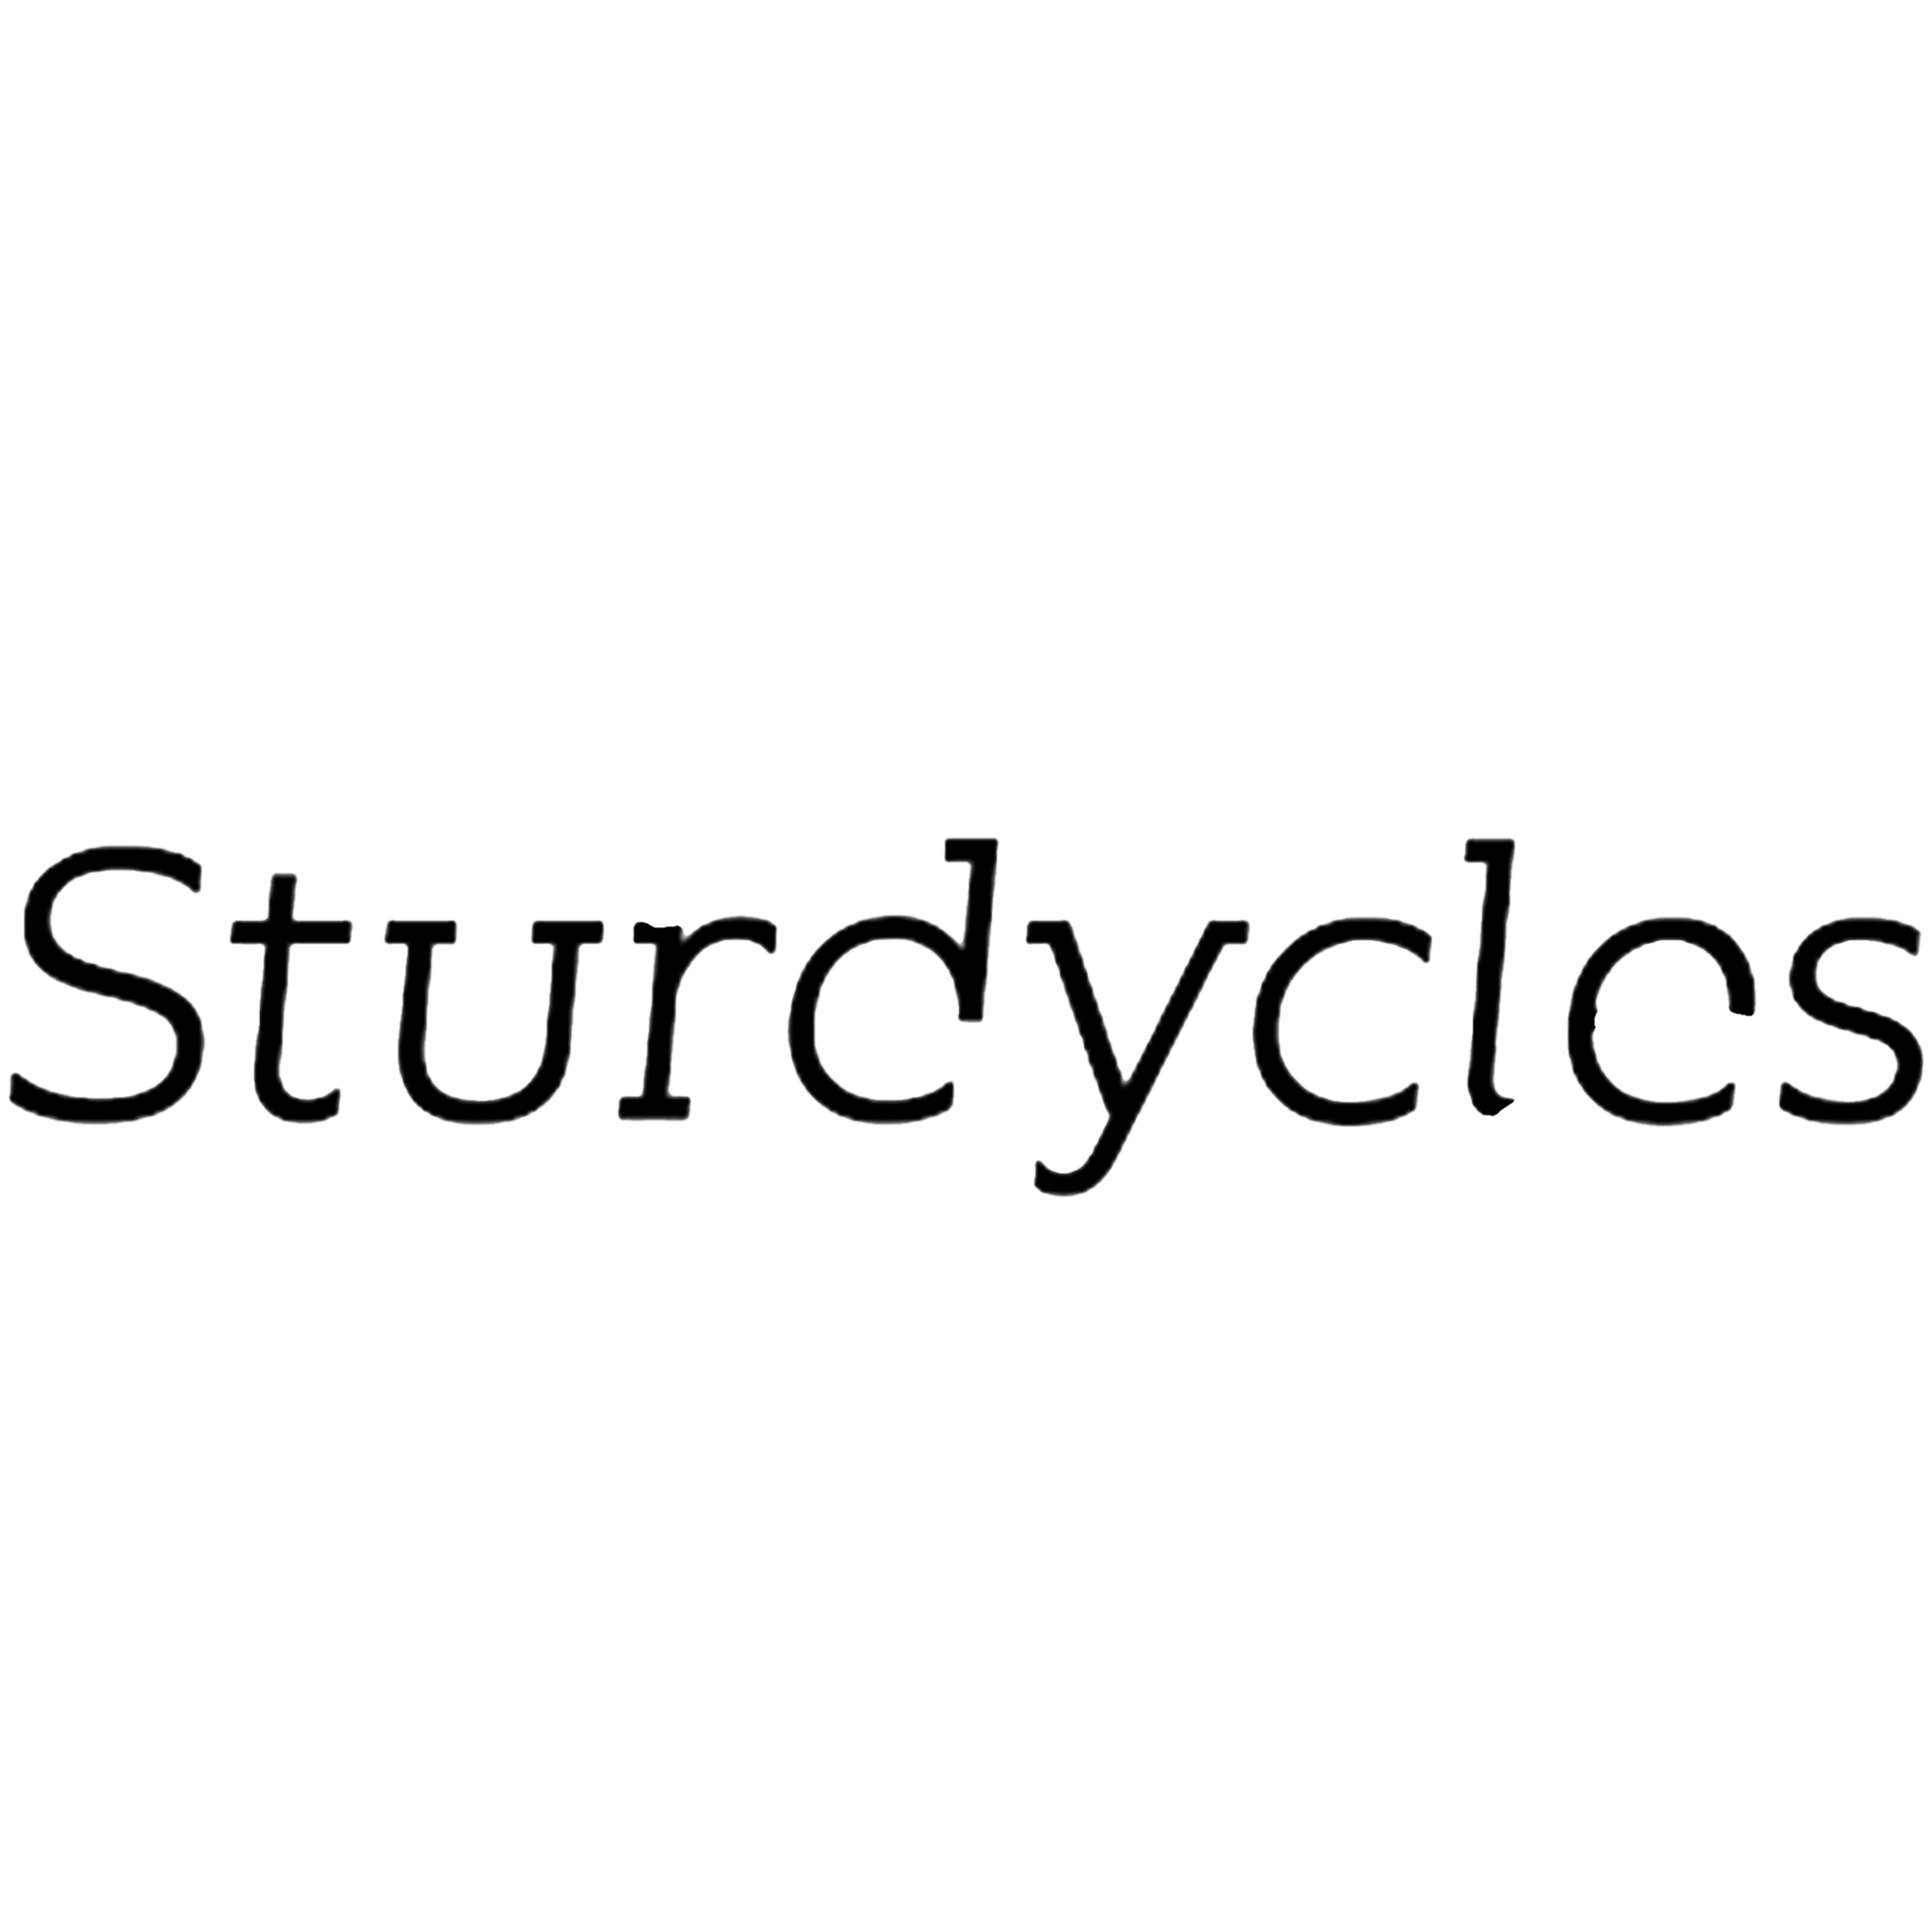 Sturdy_logo_BW